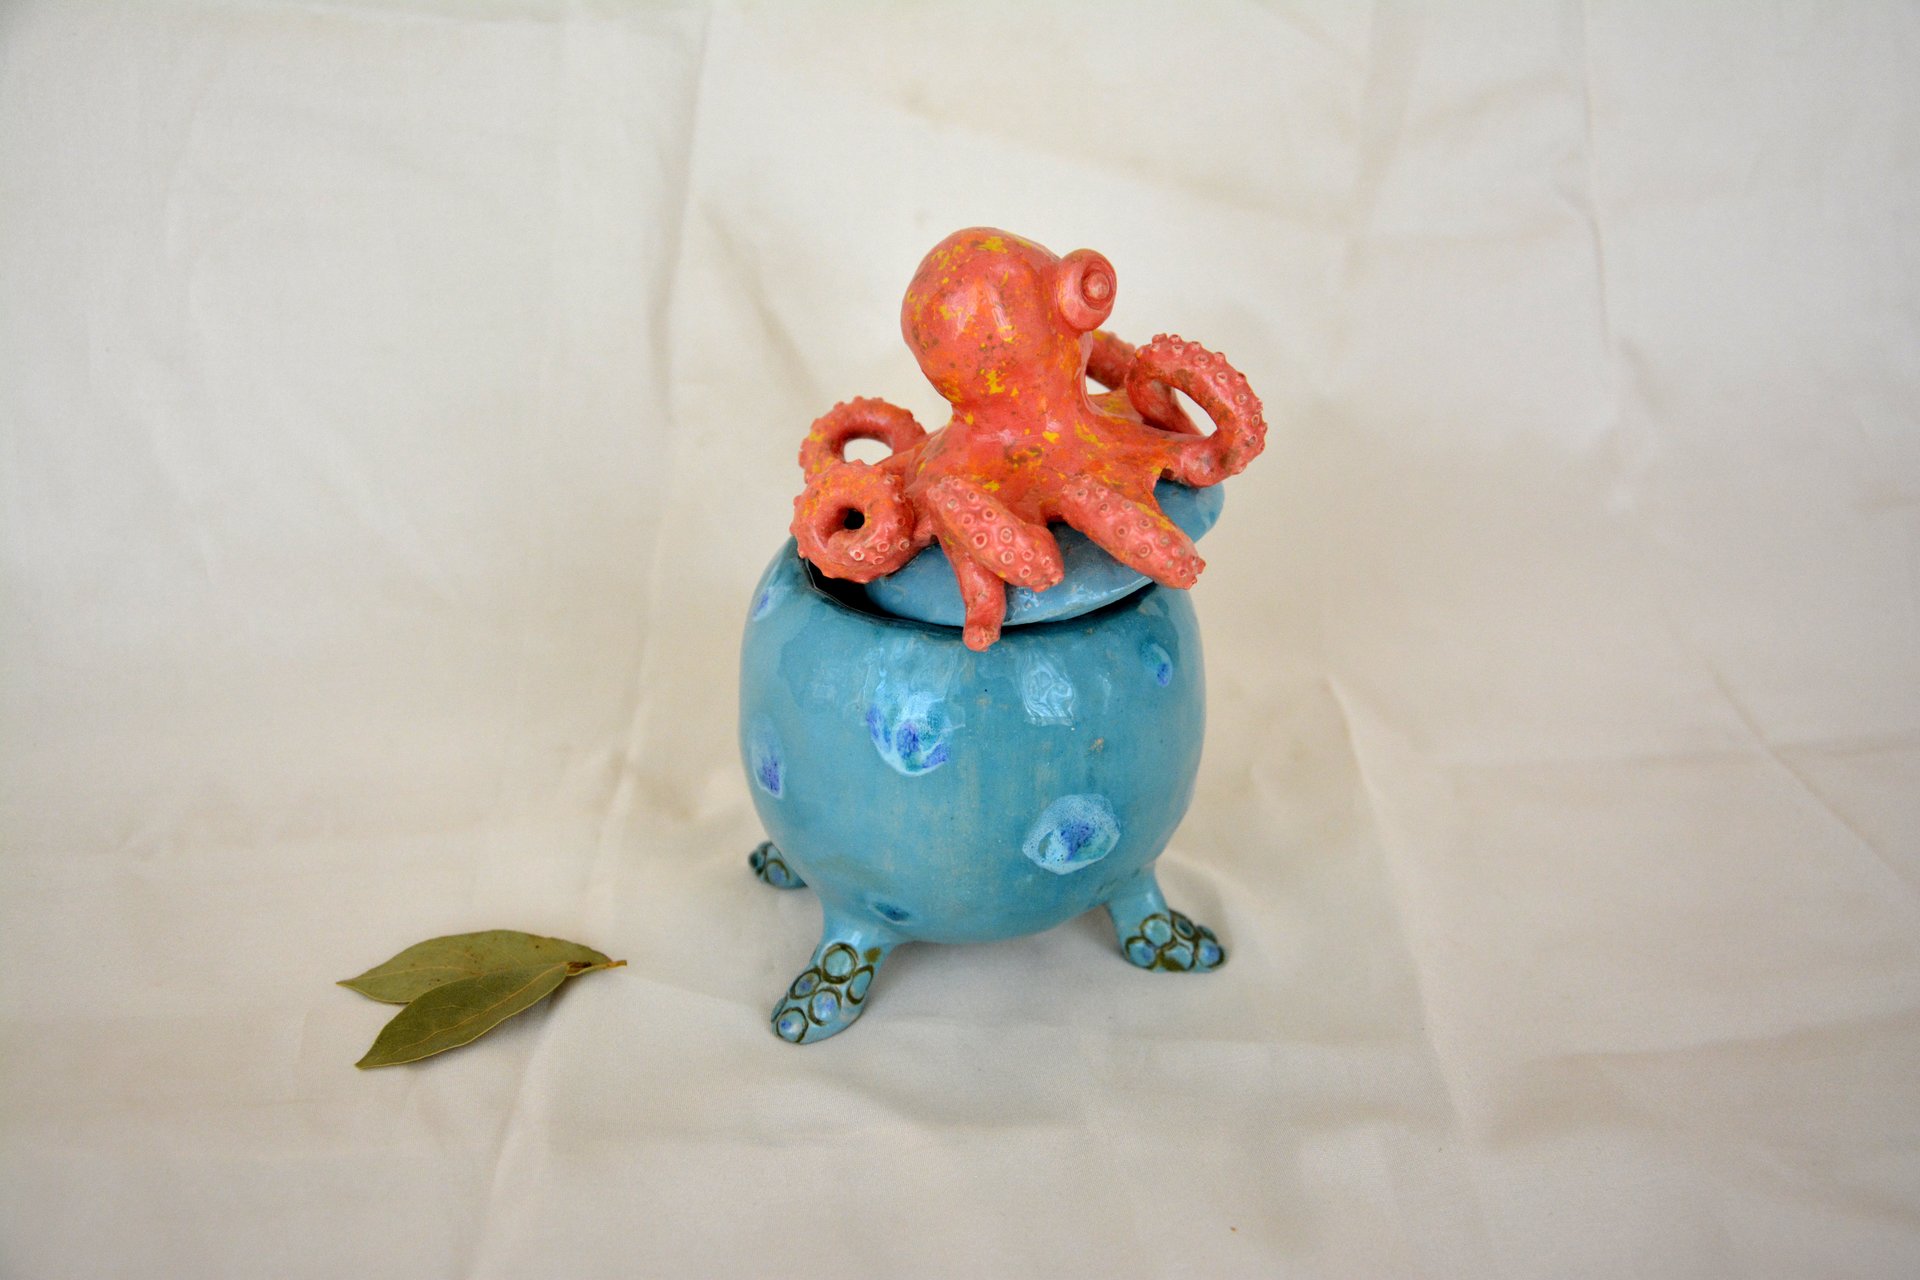 Octopus - Ceramic jars, 10 cm * 10 cm, height - 15 cm, photo 3 of 3.